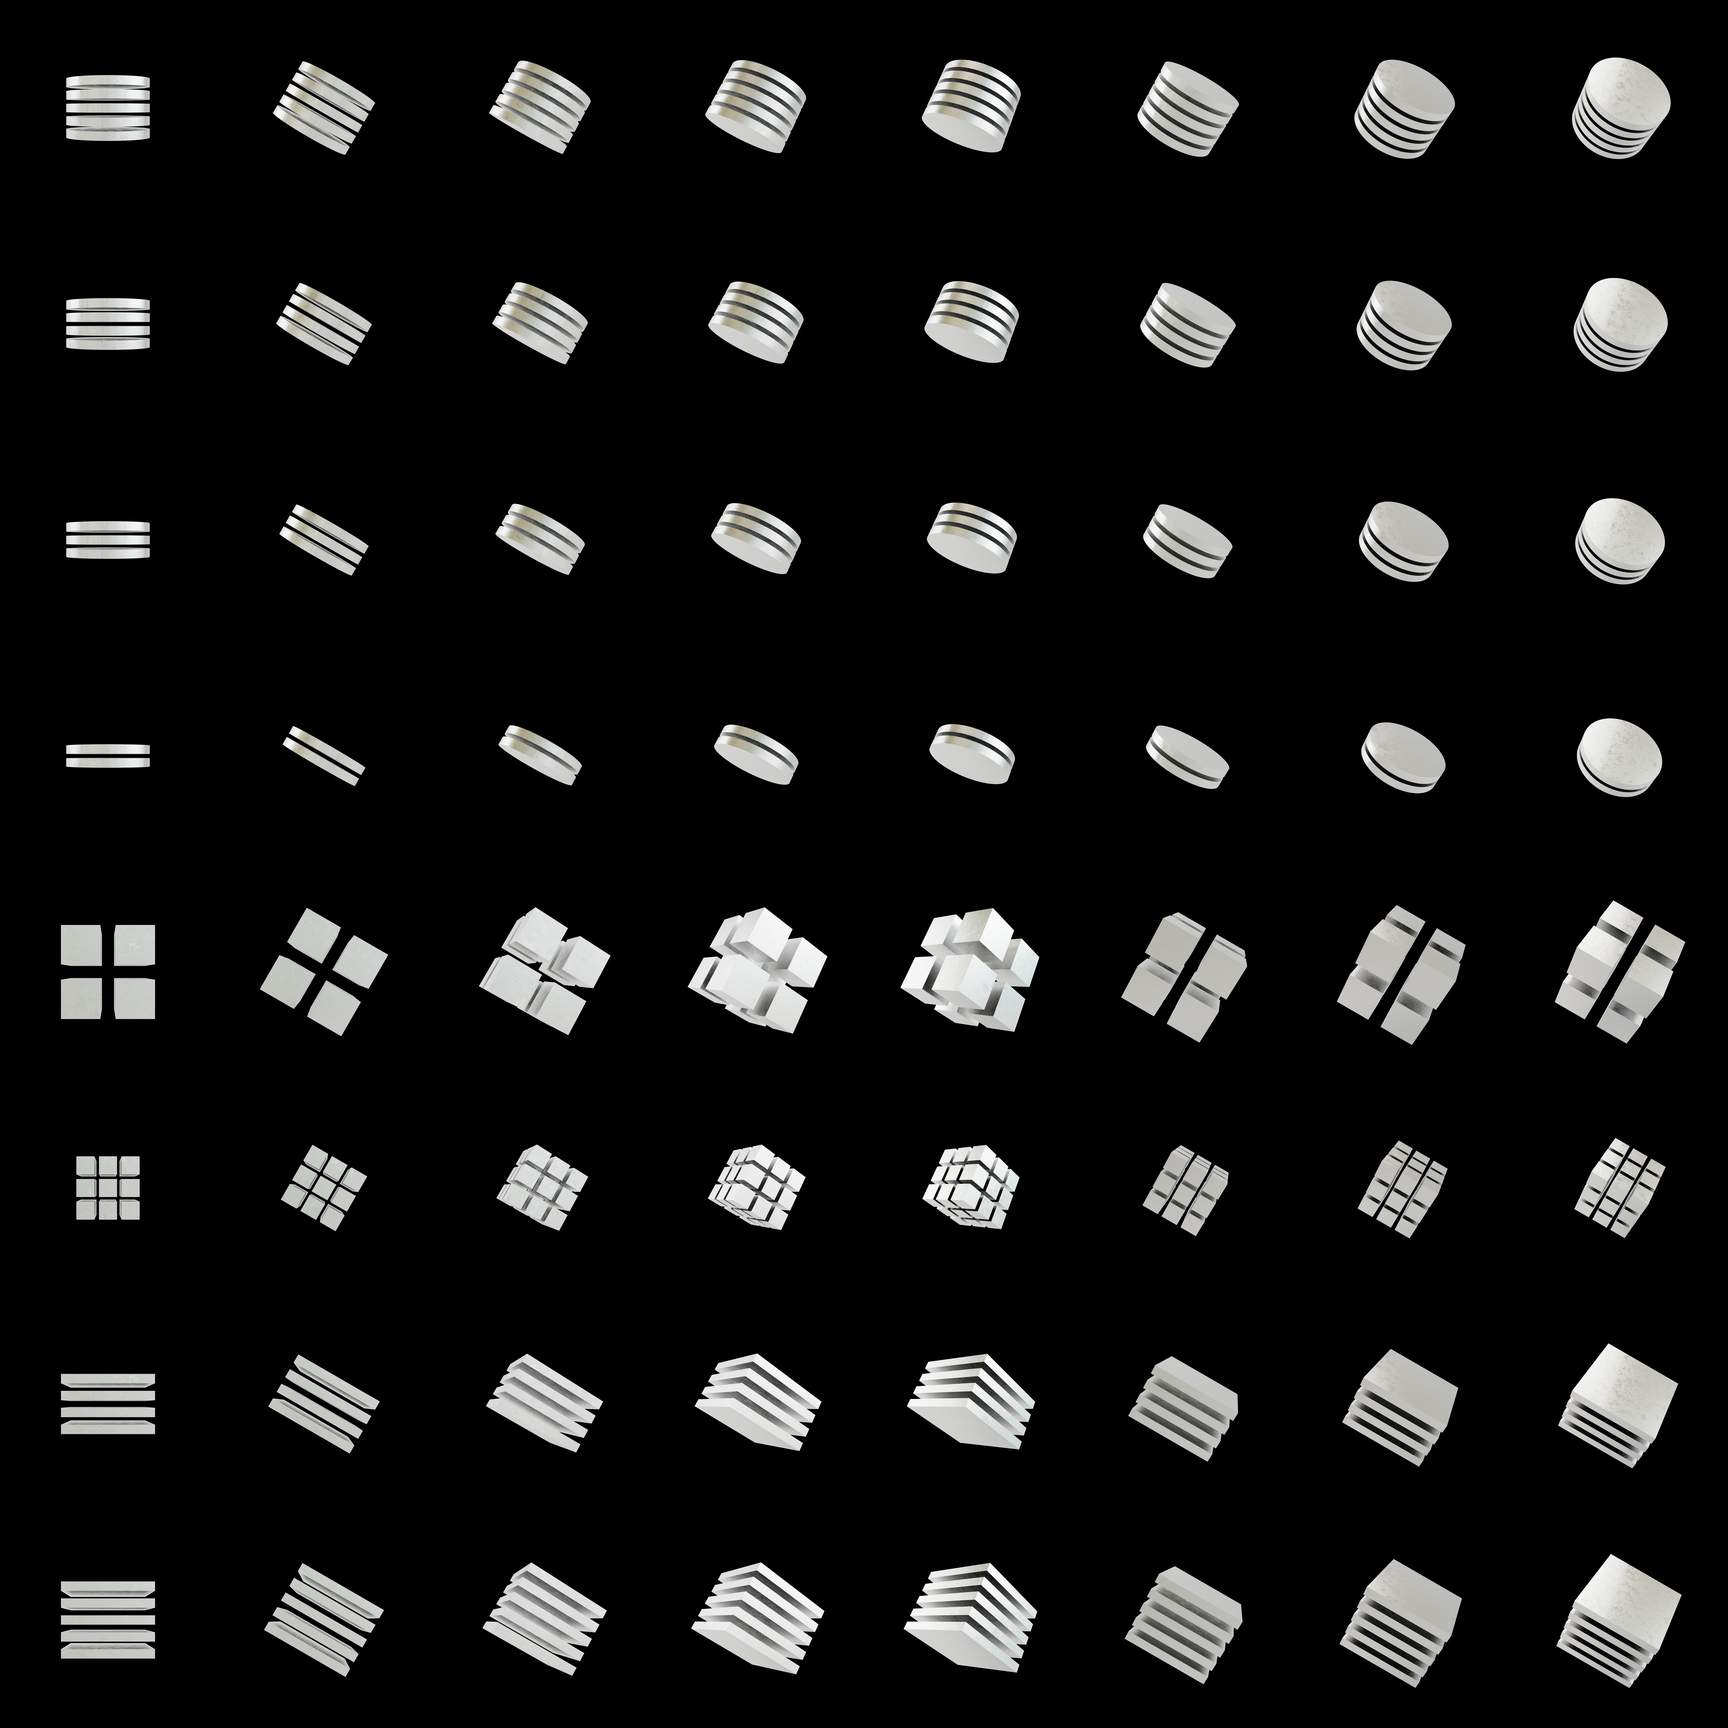 The Bundle - cmp.subtle-imperfections/z tile image 1